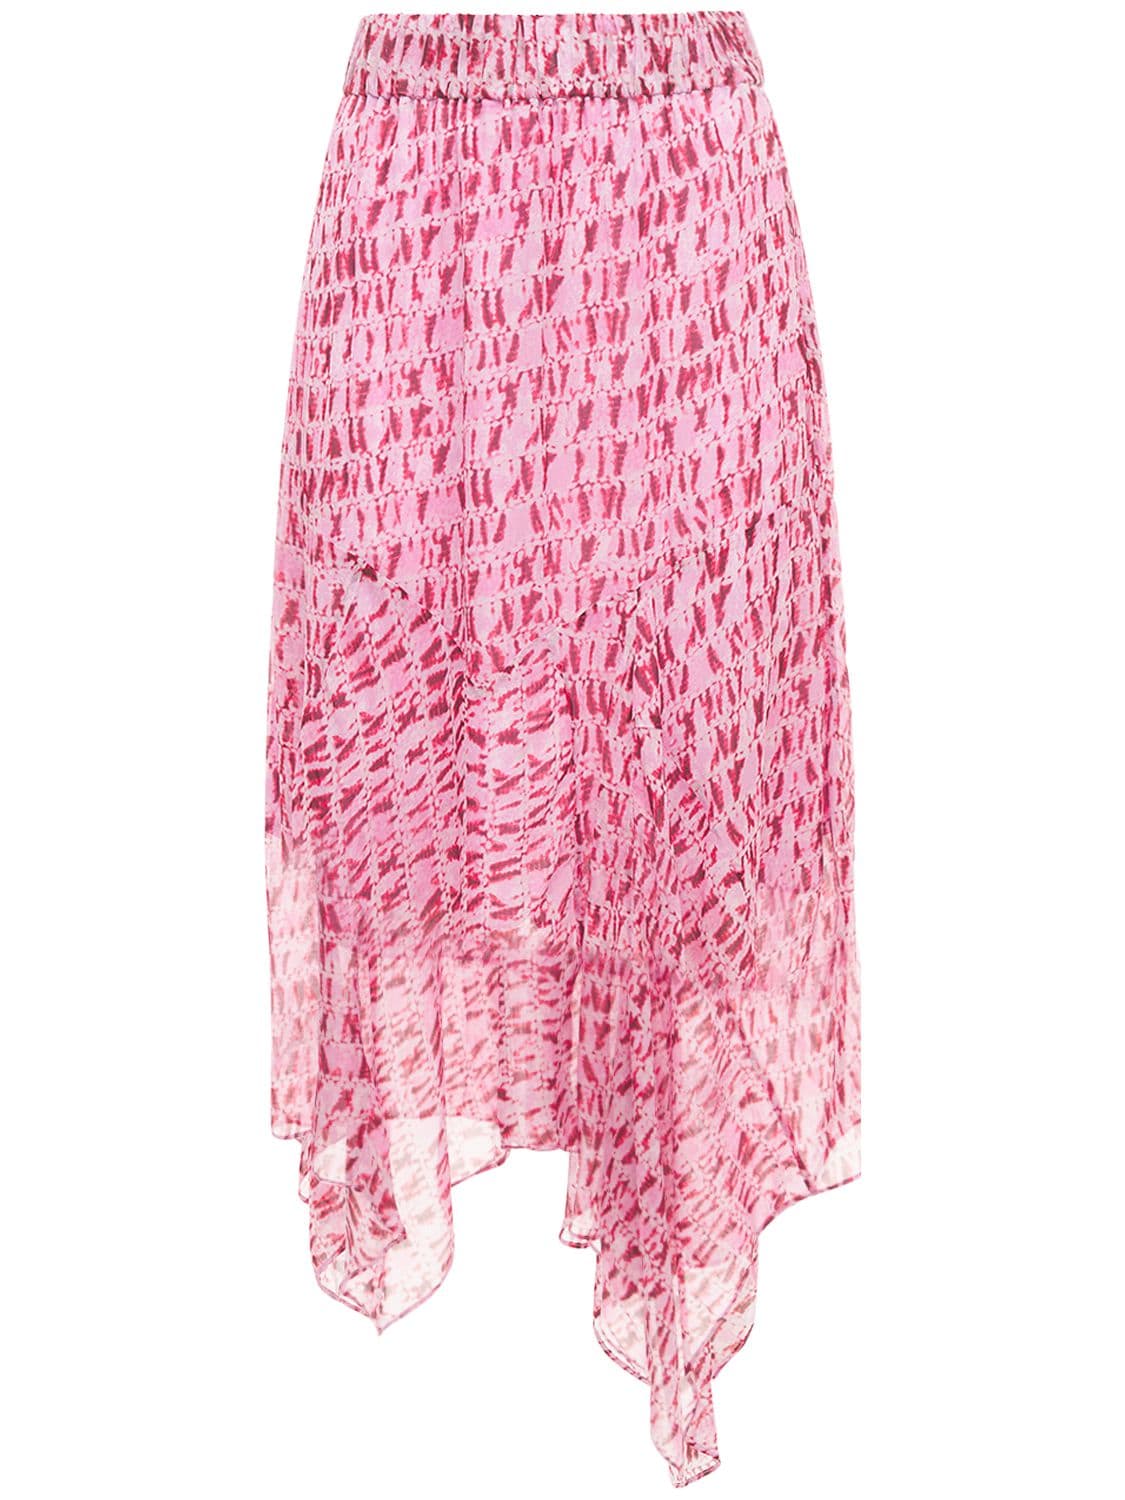 Soleda Asymmetrical Chiffon Skirt - ISABEL MARANT ÉTOILE - Modalova